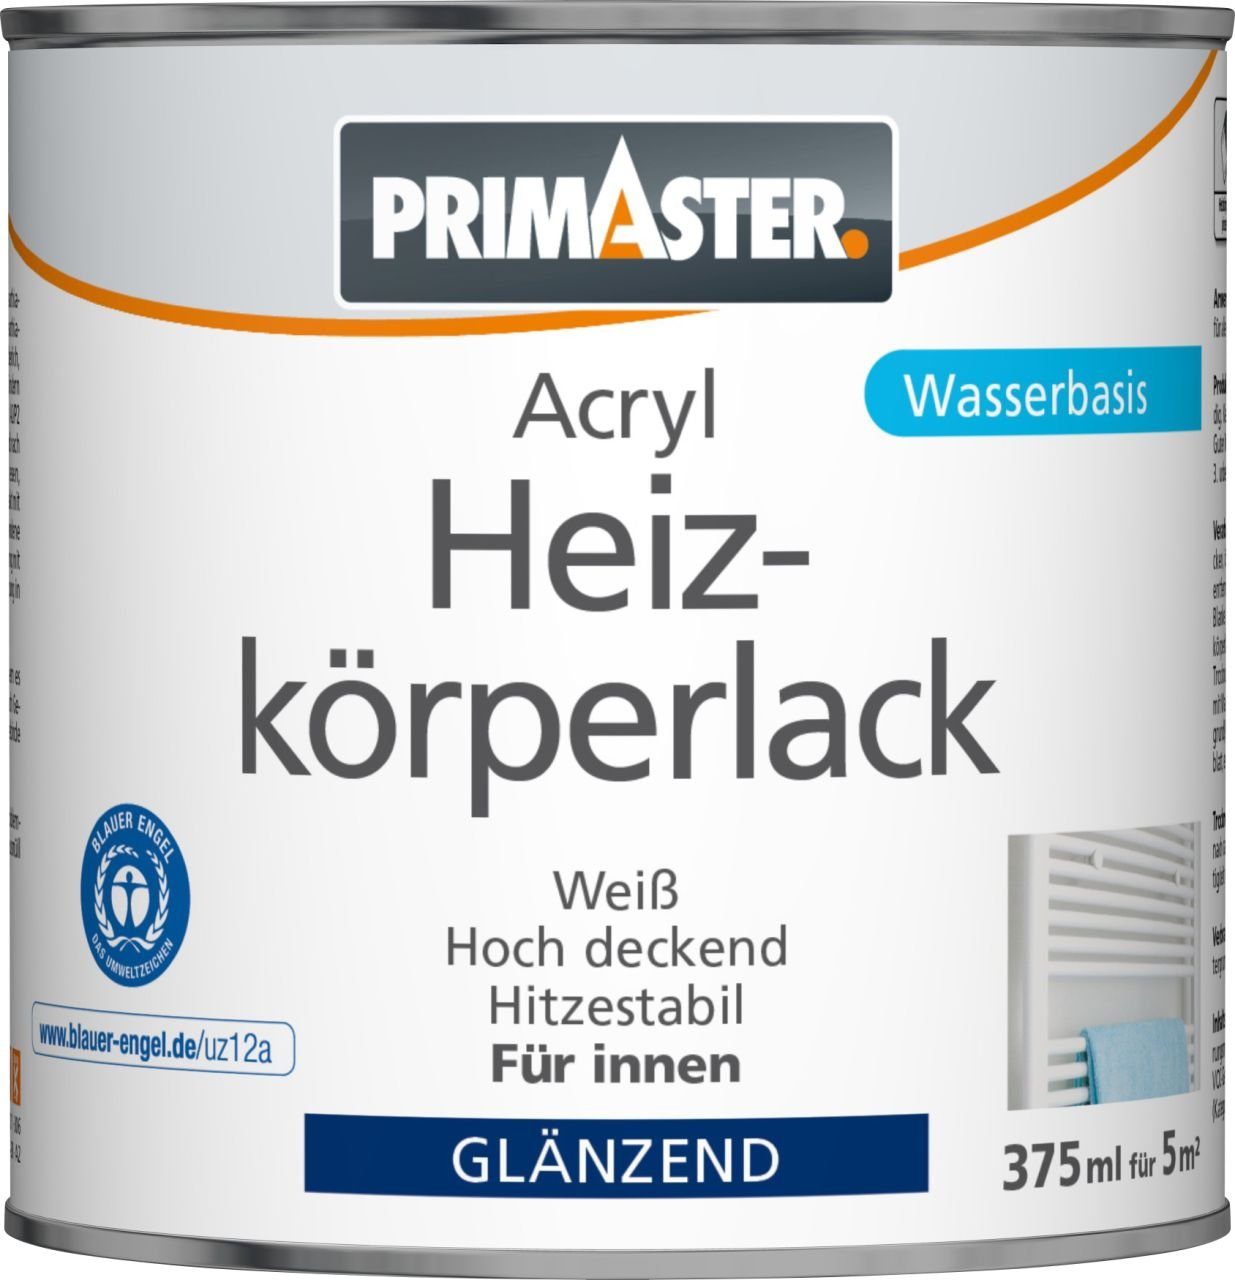 Primaster Heizkörperlack Primaster Acryl Heizkörperlack 375 ml weiß